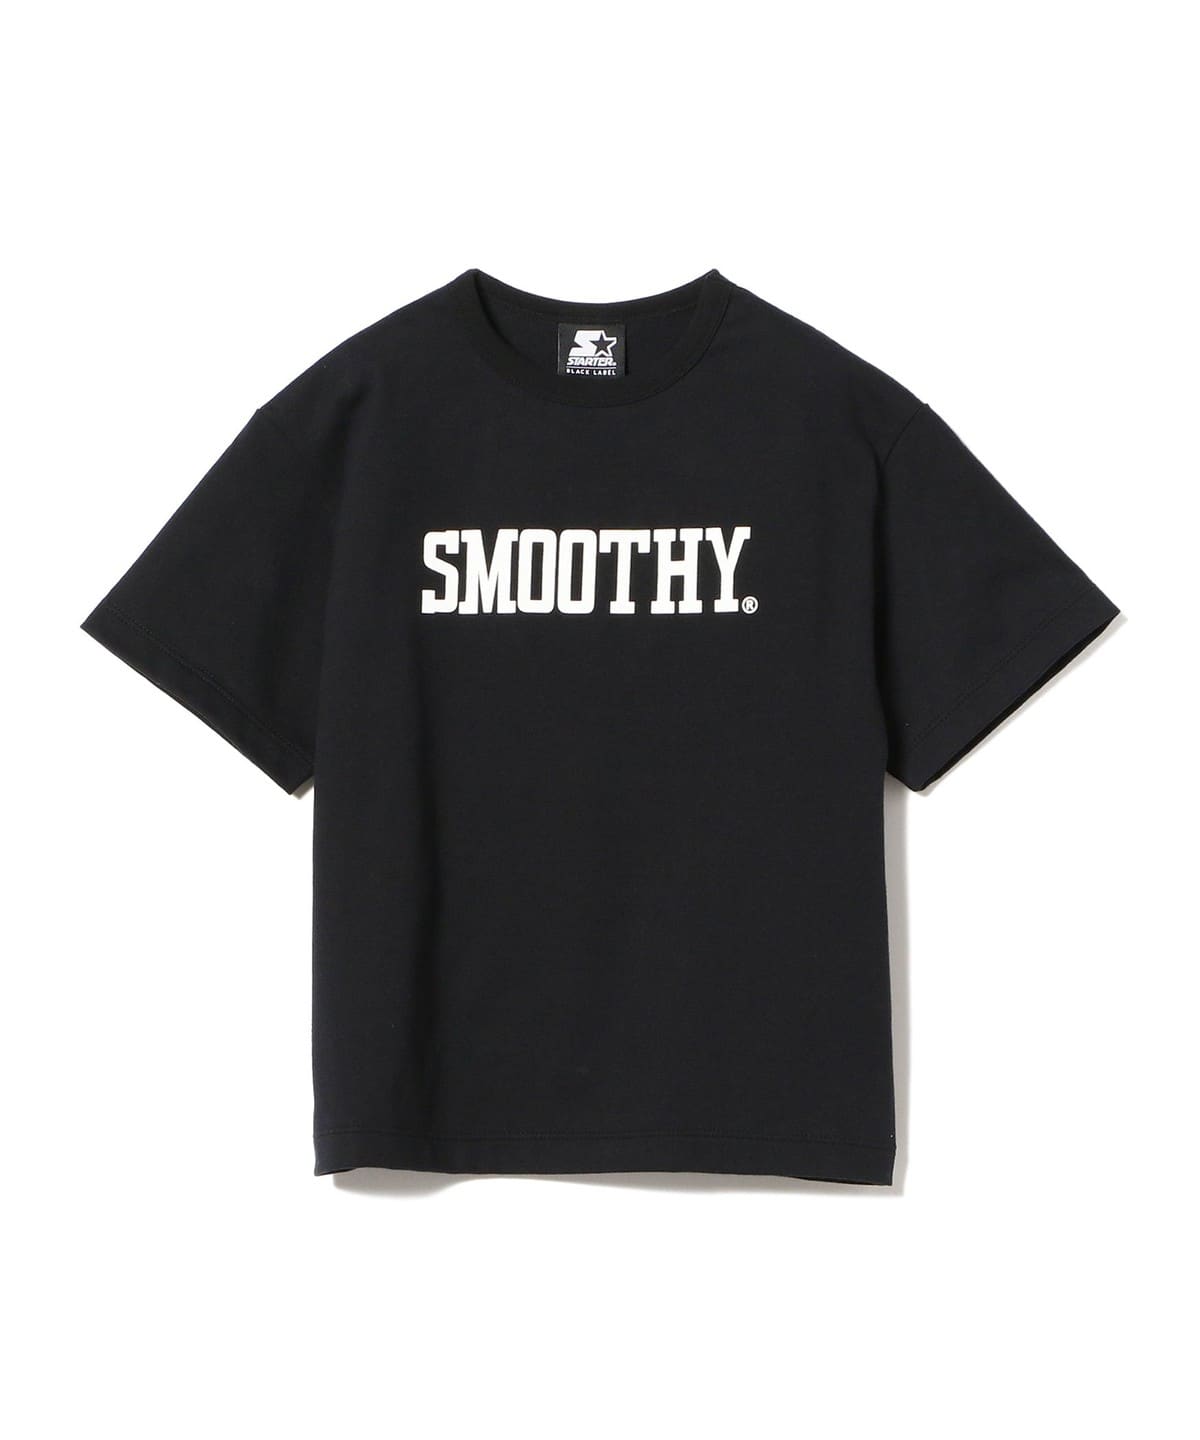 こども ビームス（こども ビームス）SMOOTHY × STARTER / ロゴ 半袖 T